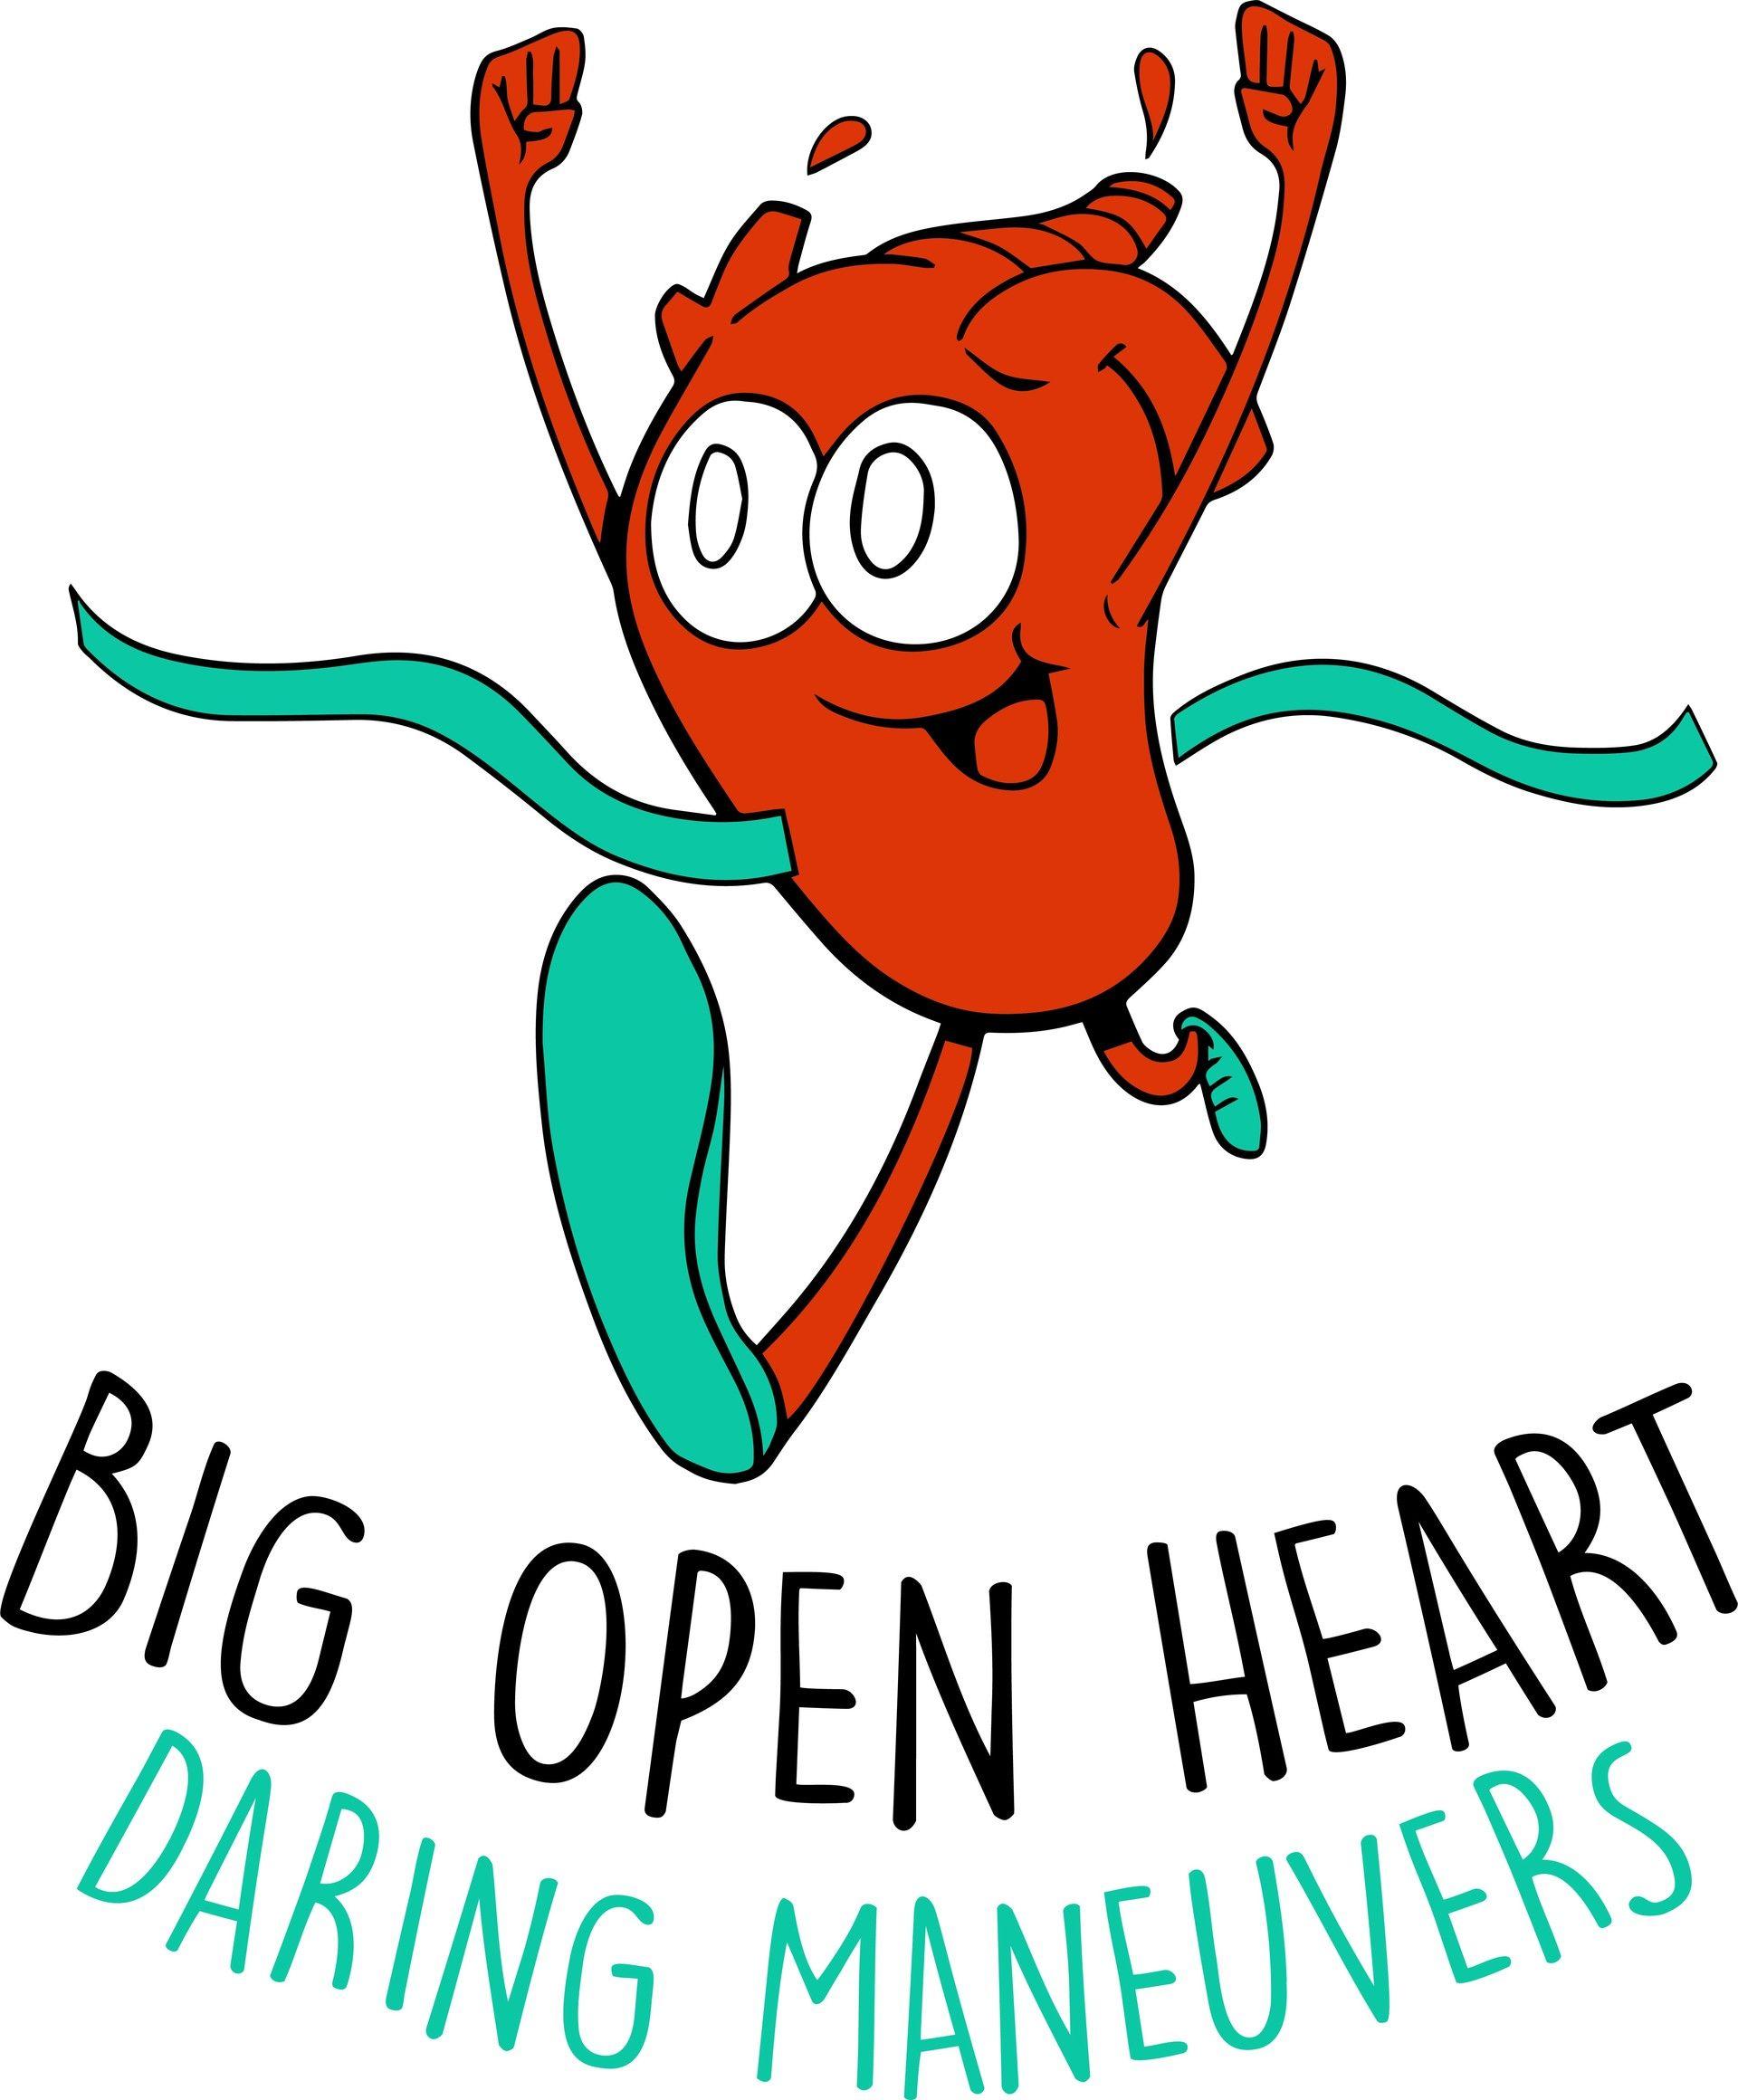 Red Open Heart Logo - Adam Wanliss - Big Open Heart Logo Design